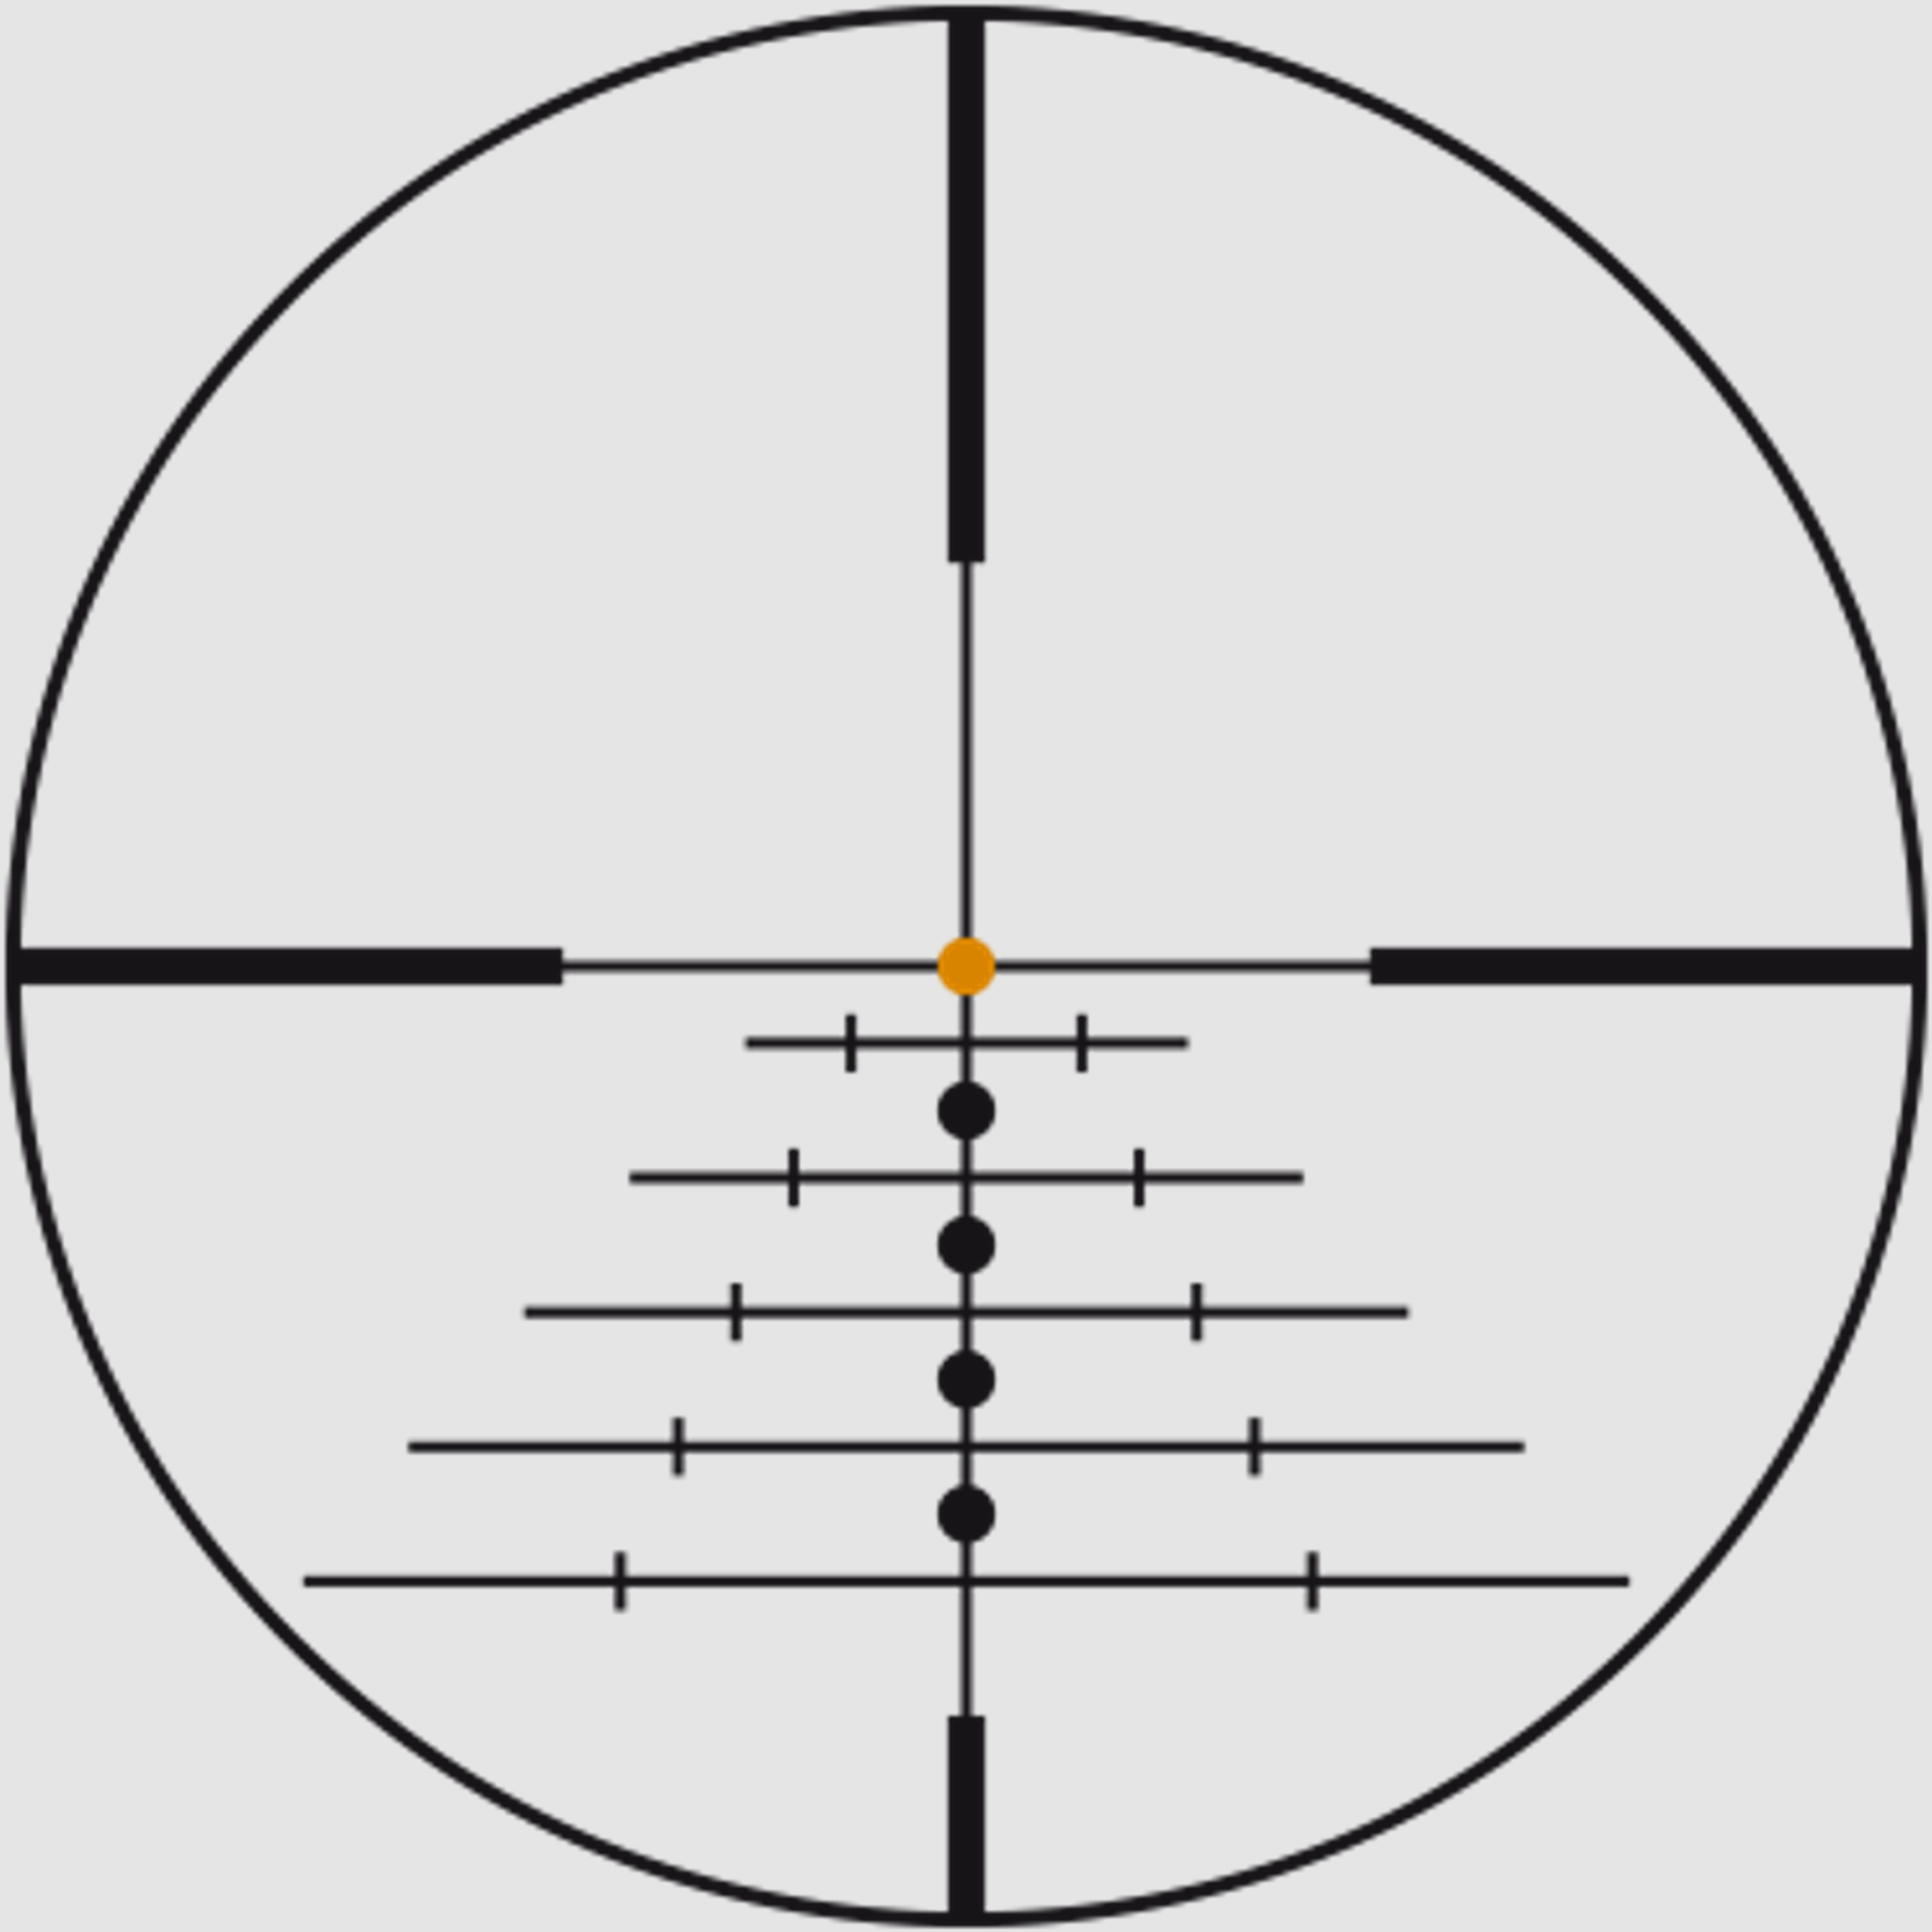 SWAROVSKI Zielfernrohr mit Leuchtabsehen 2-12x50 Z6i L (30mm) II Abs. 4A-I/4A300I/BRXI